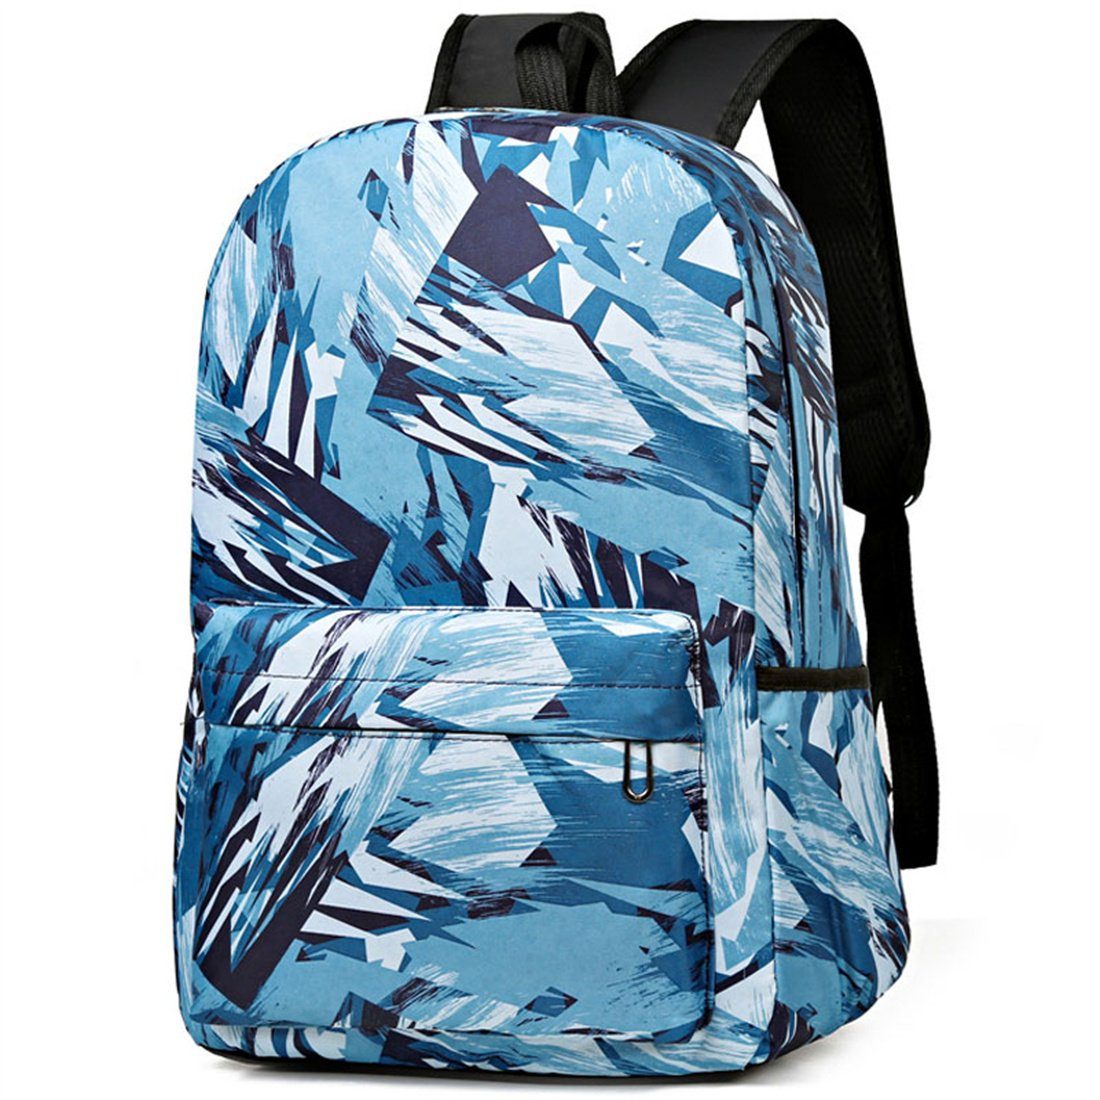 Studenten,Schule Schultasche blau für Kapazität Schulranzen Mode lässig DÖRÖY Rucksäcke Große